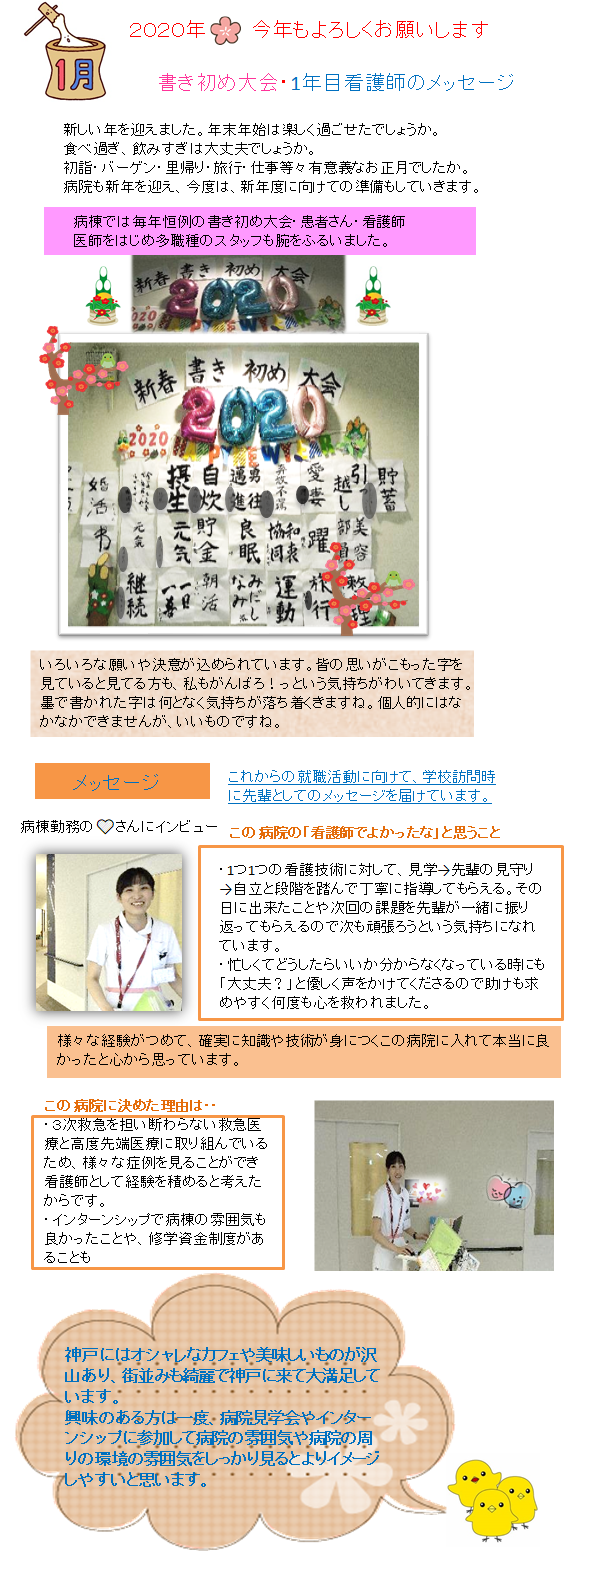 書き初め大会 1年目看護師のメッセージ 神戸市民病院機構 看護職員募集サイト